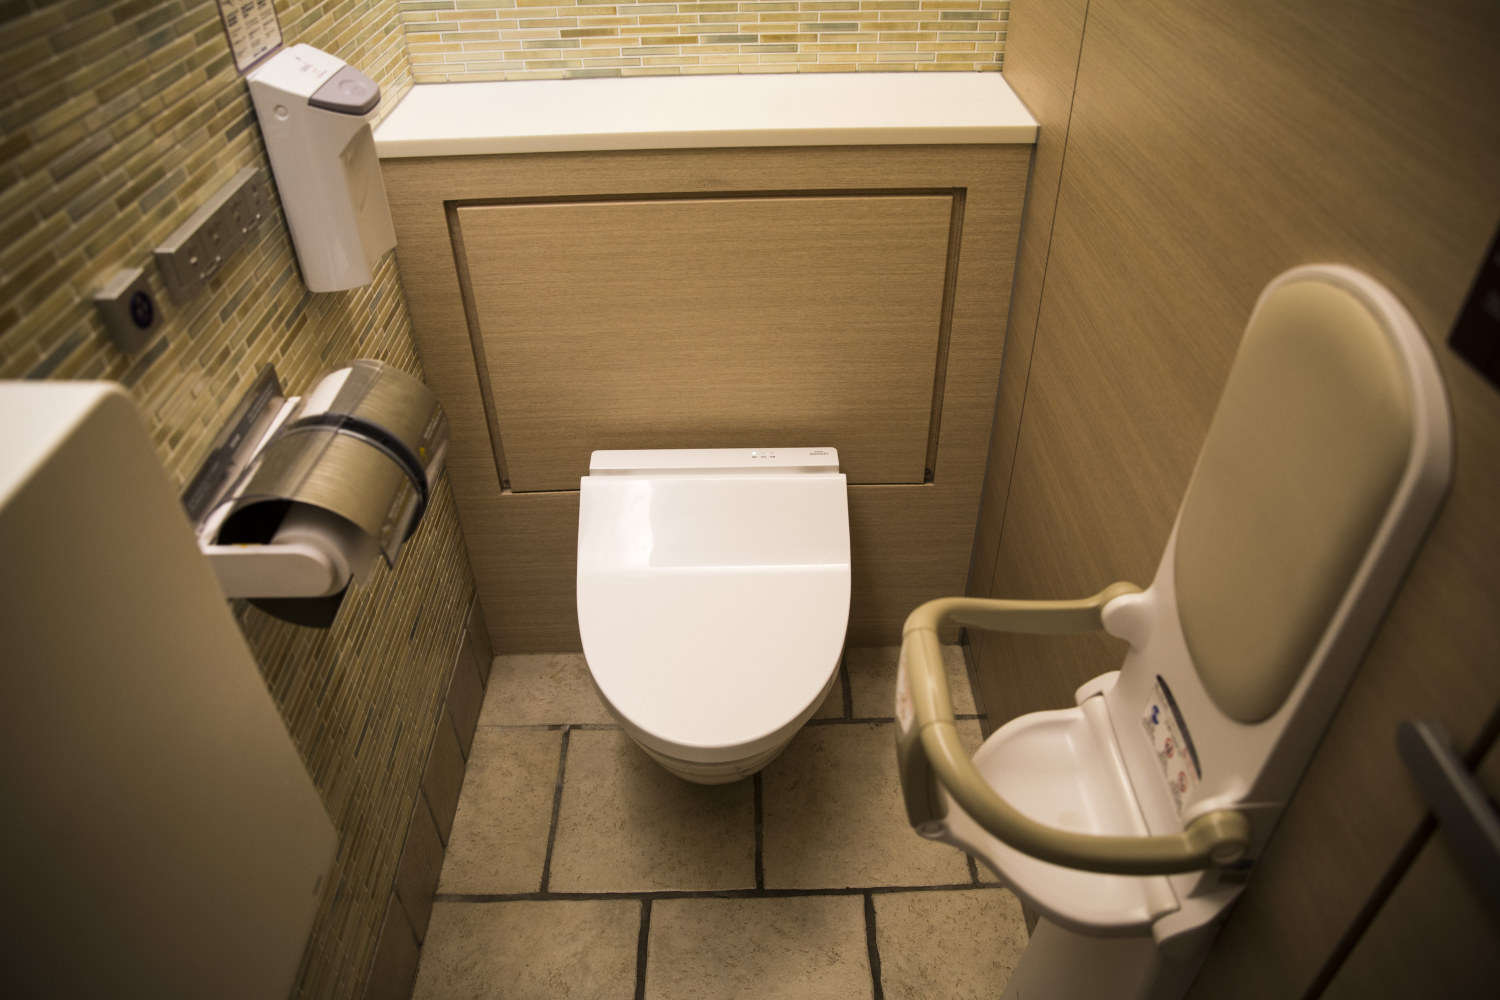 20181125 Toilet Seat Stool Tokyo Japan Lifestyle